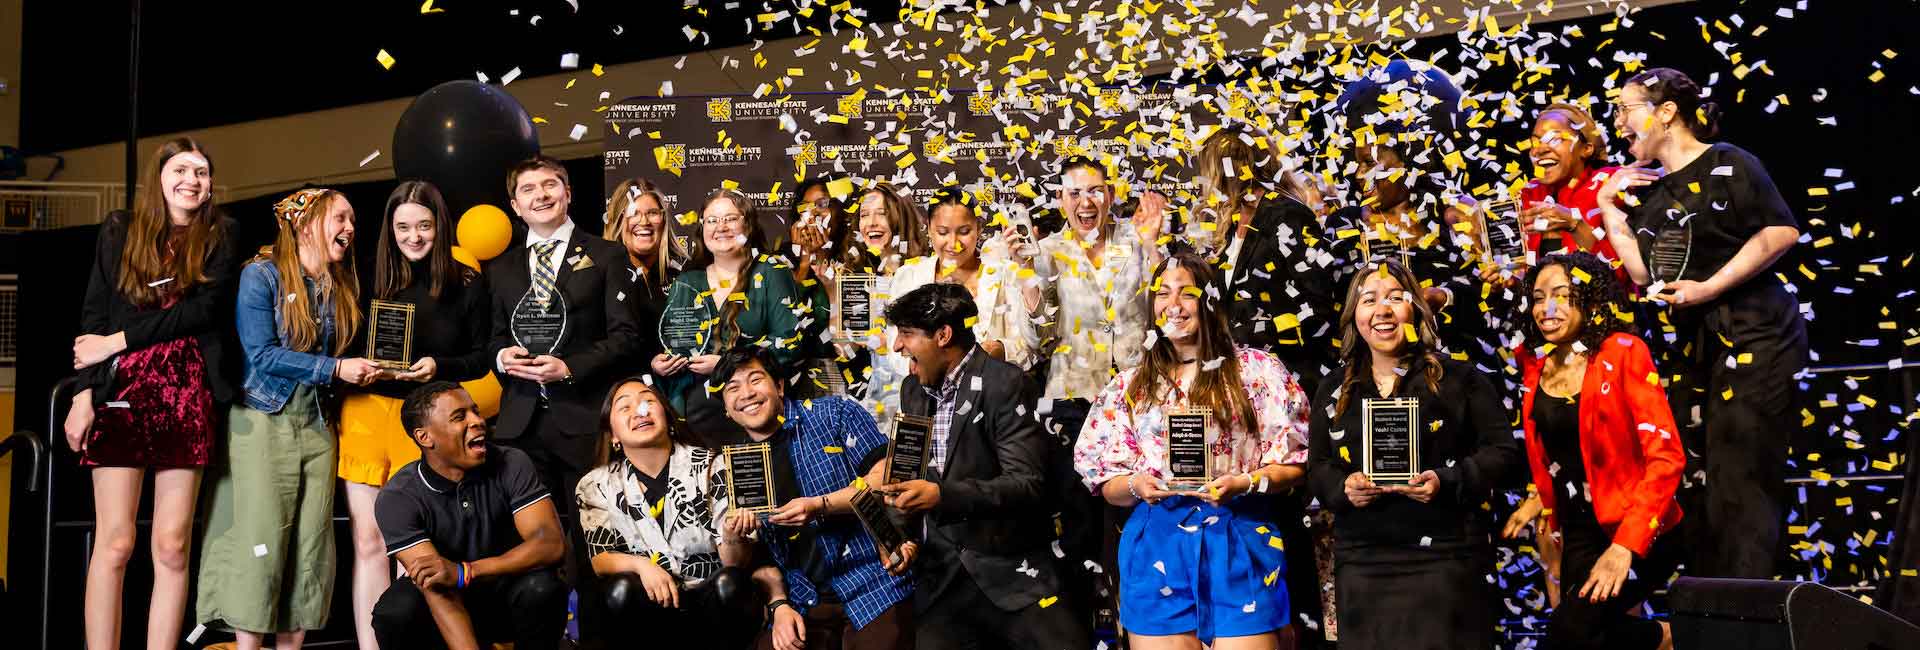 KSU Student Leader Award Winners celebrating together on stage